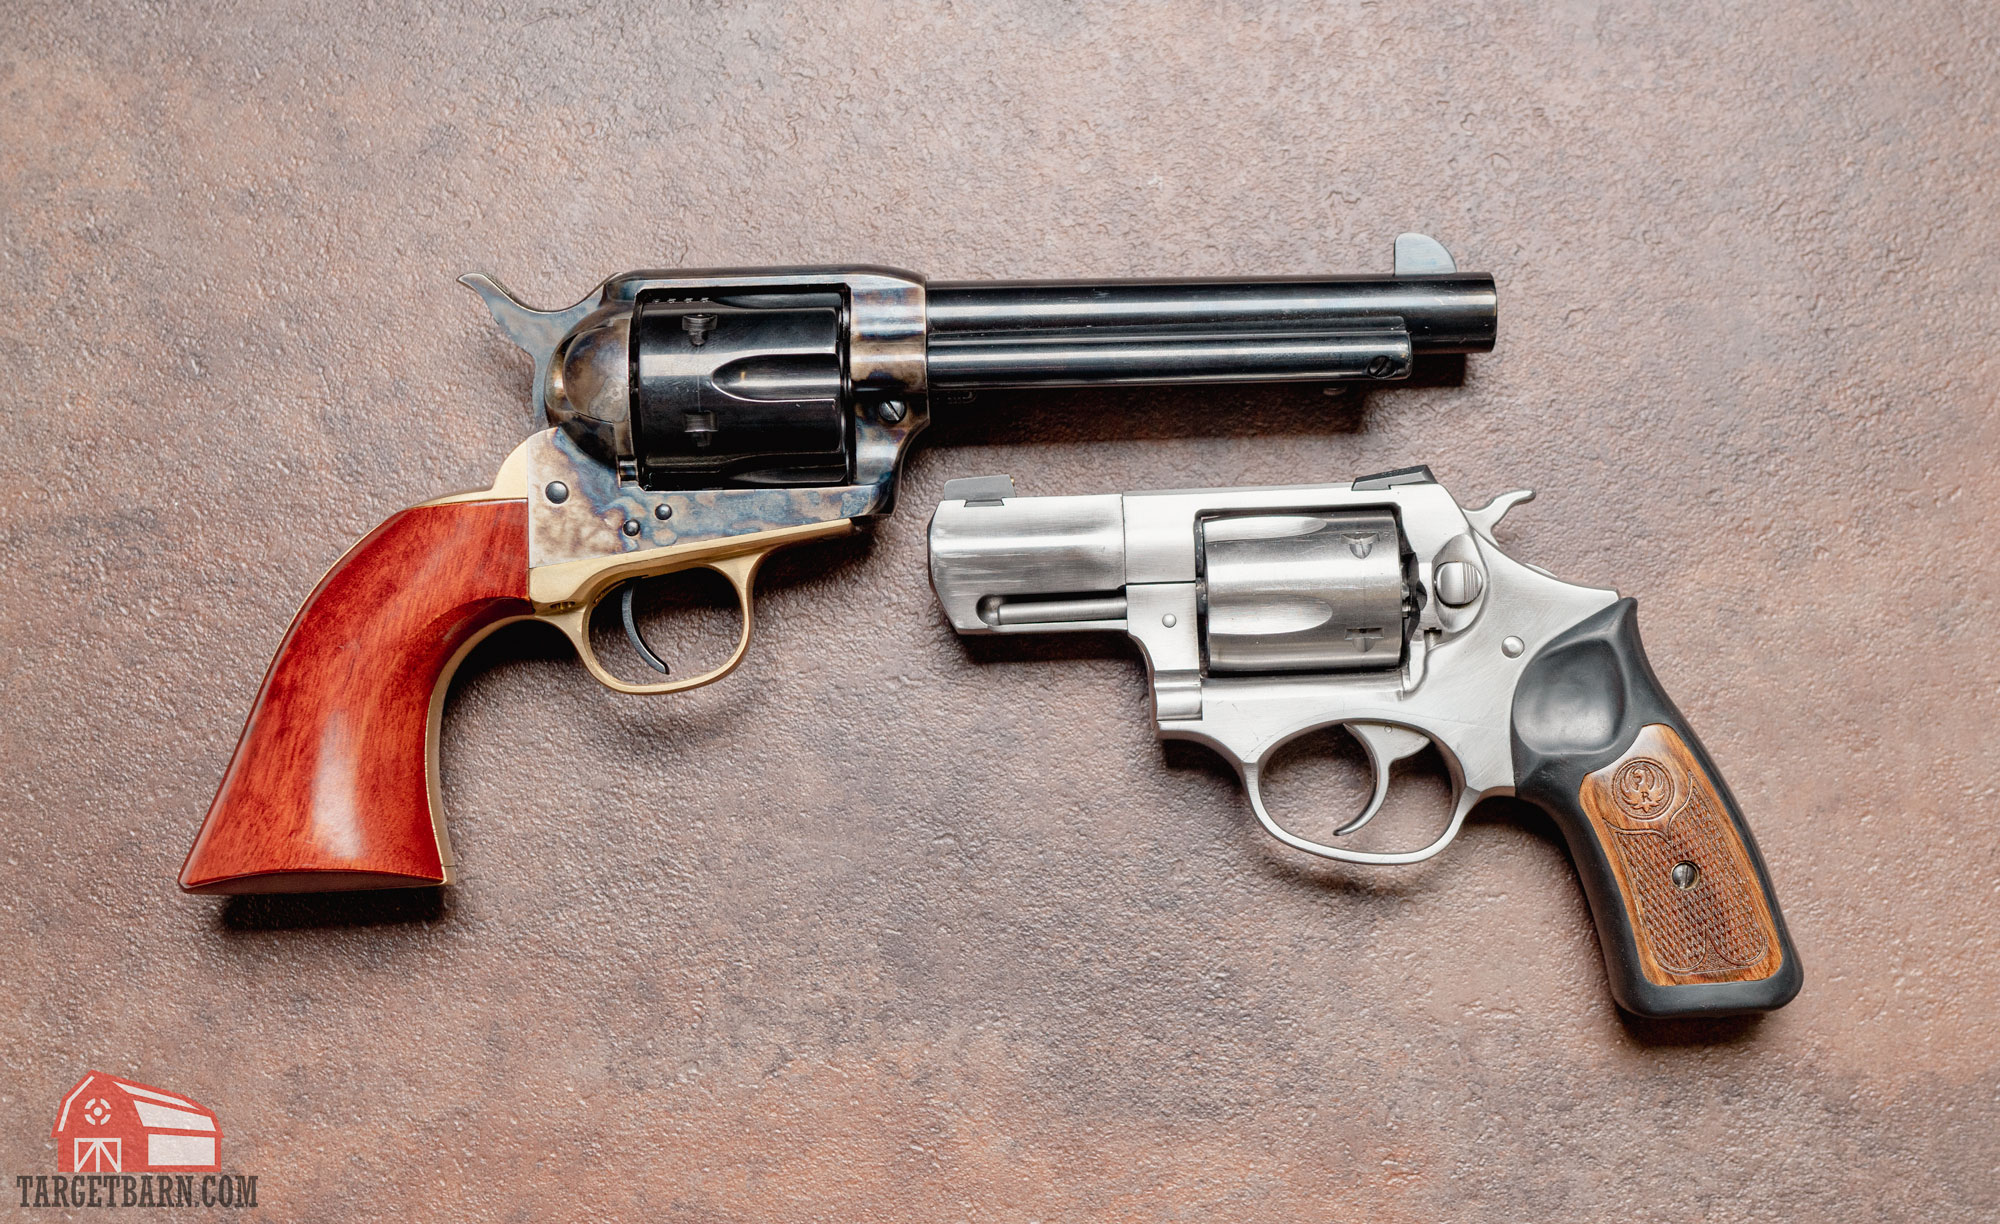 a single action revolver next to a double action revolver